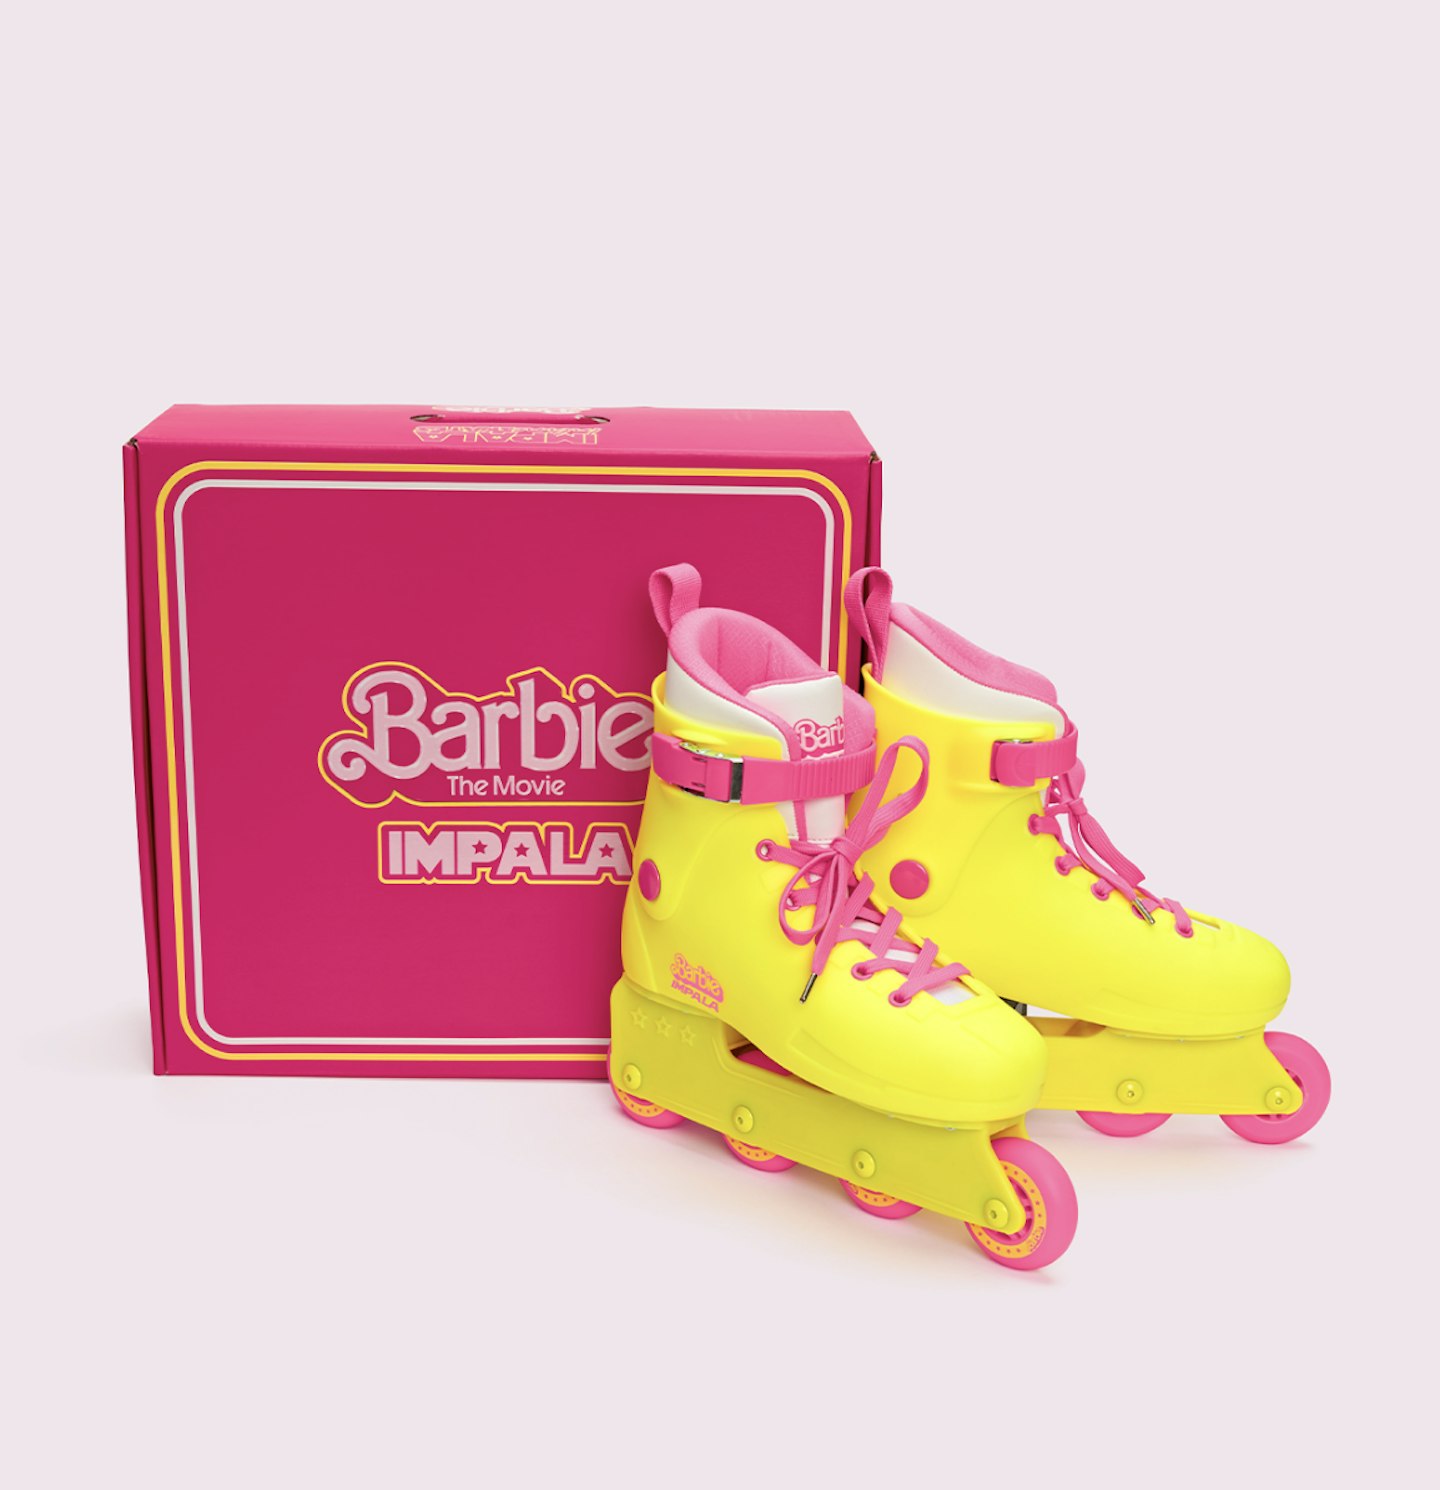 Barbie The Movie Inline Skating Ken Doll Pink